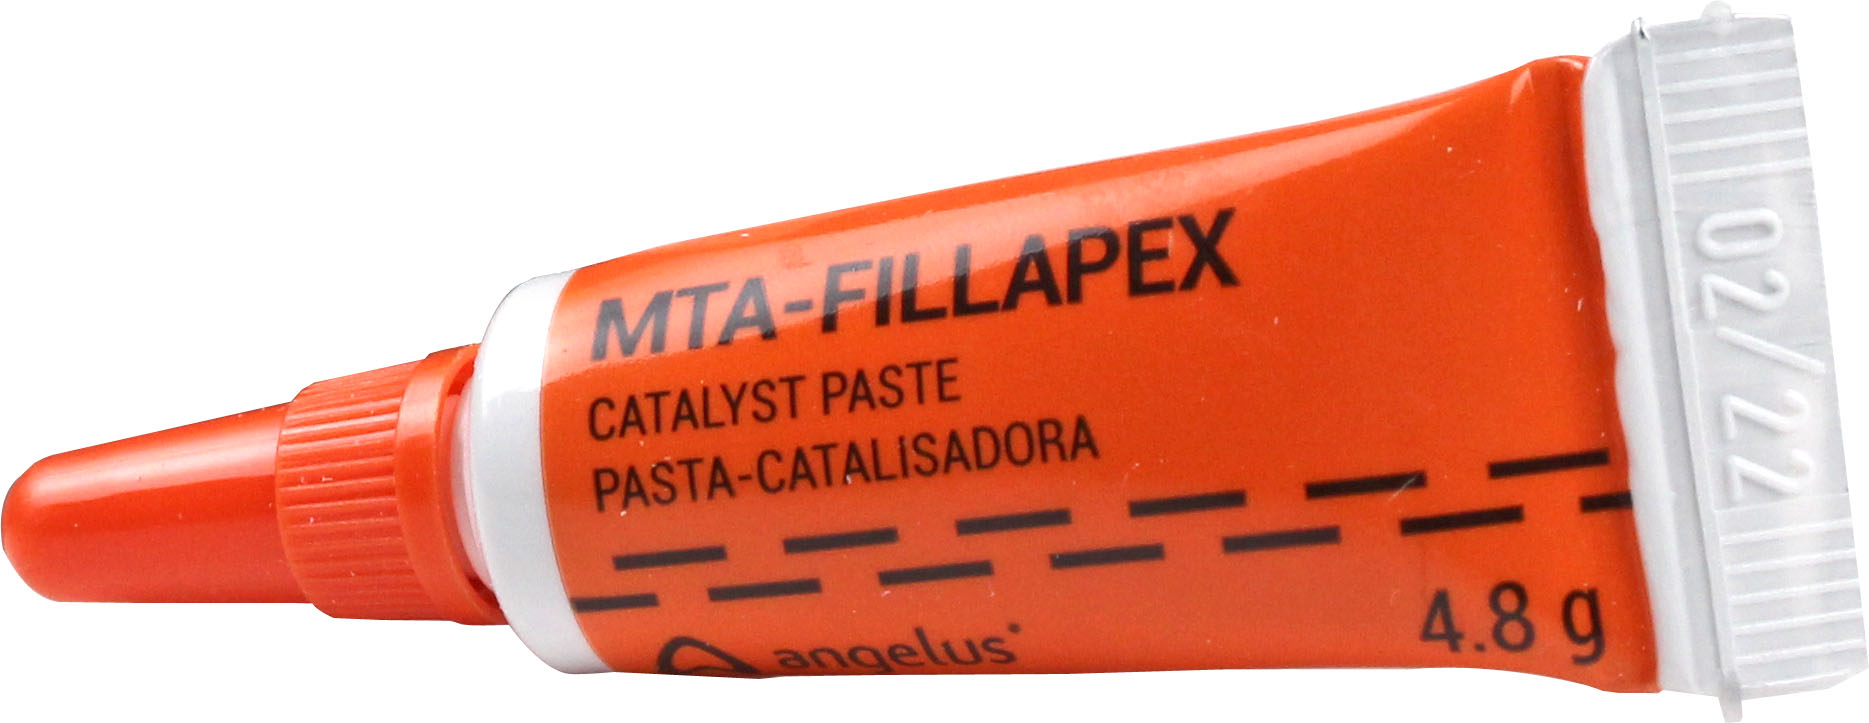 سیلر MTA-FILLAPEX آنجلوس